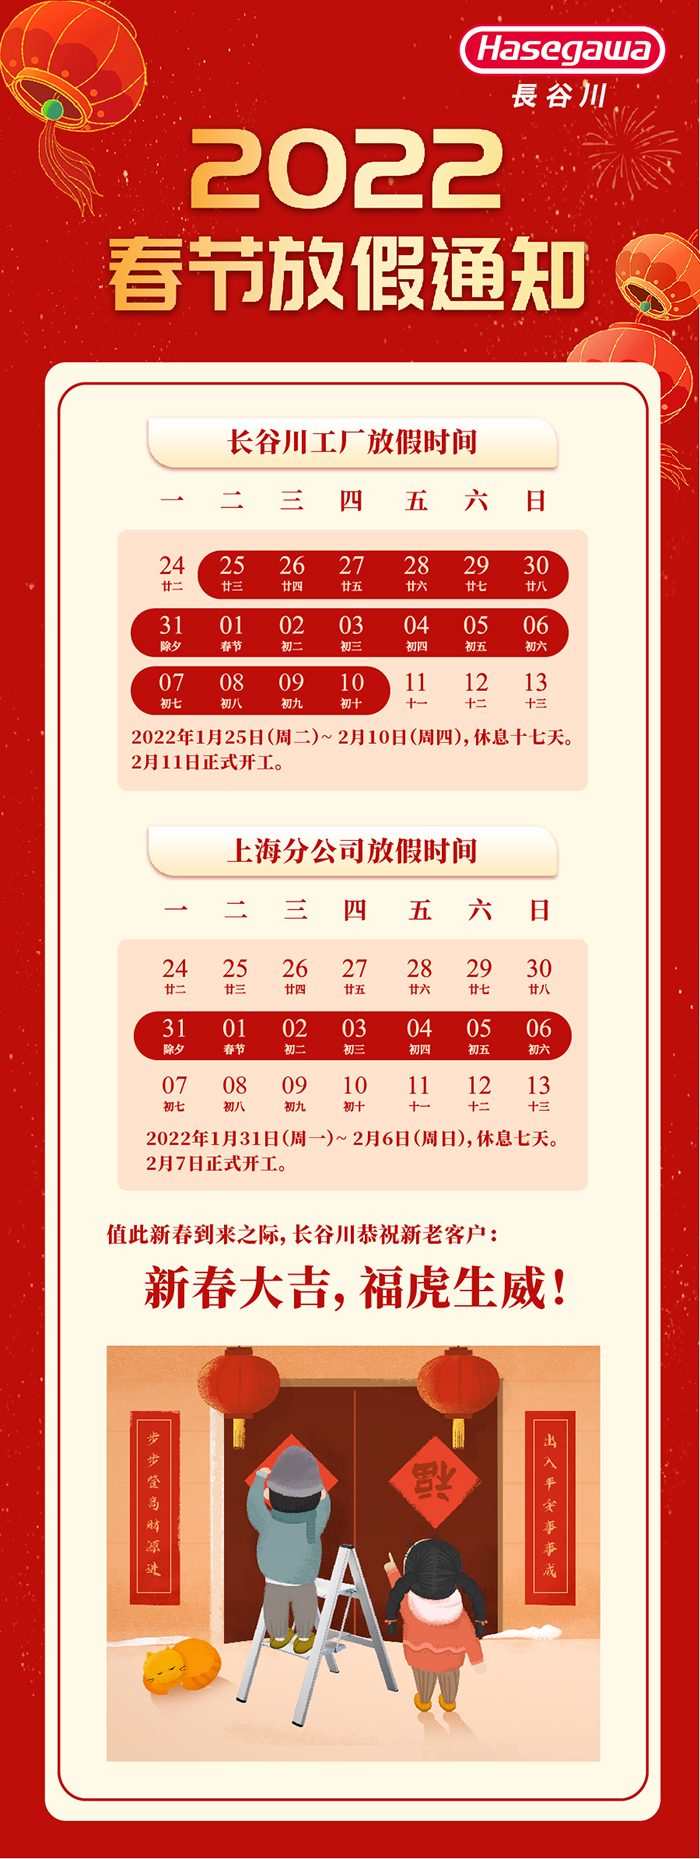 2022-1-25-春节放假通知-最终定稿(网站需要).jpg